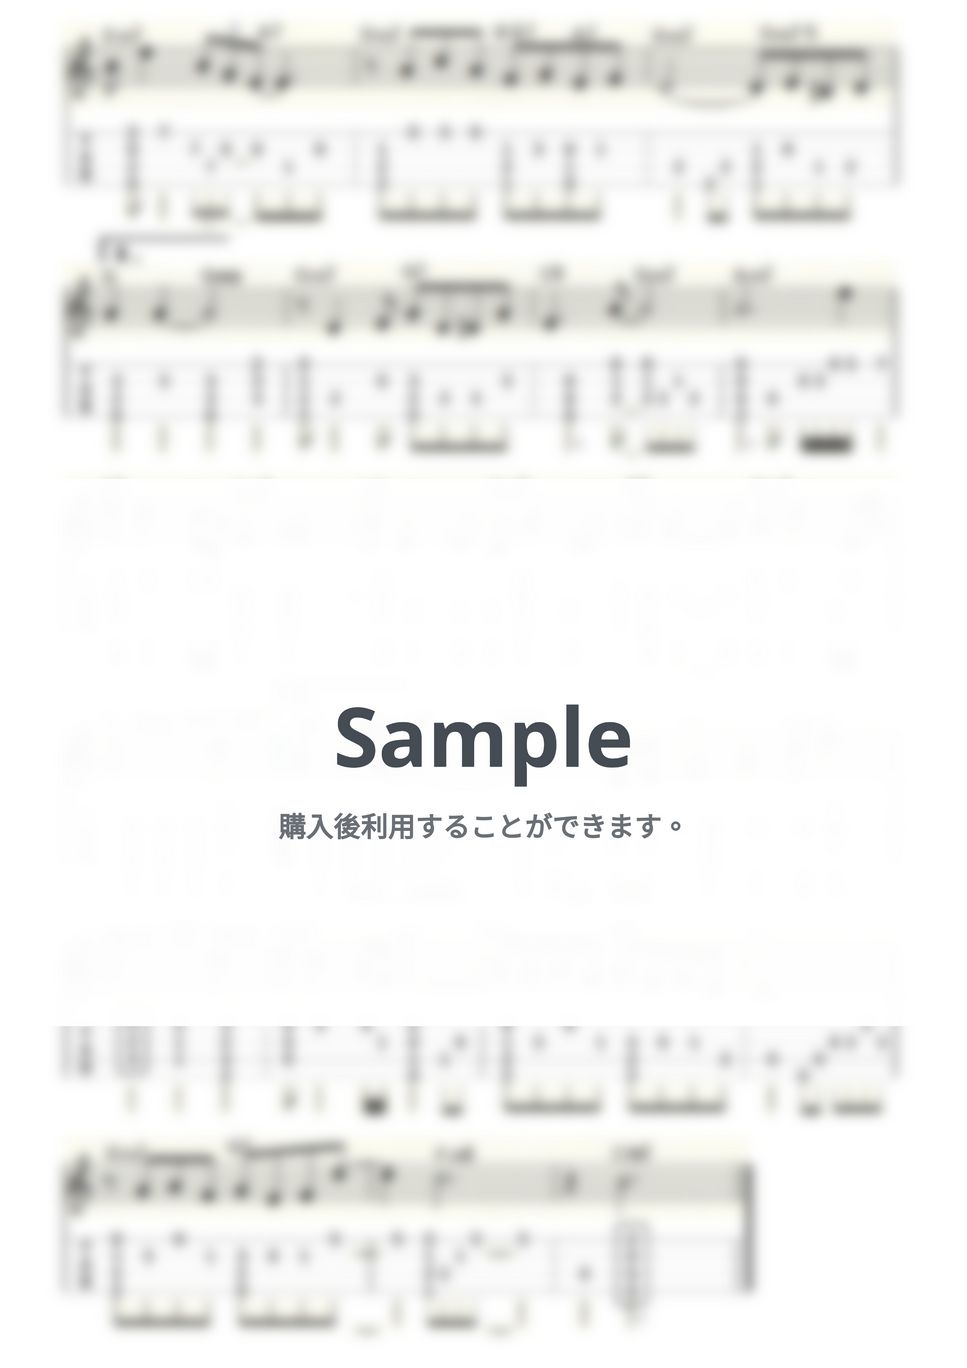 ホーギー・カーマイケル - STARDUST (ｳｸﾚﾚｿﾛ/Low-G/中級) by ukulelepapa